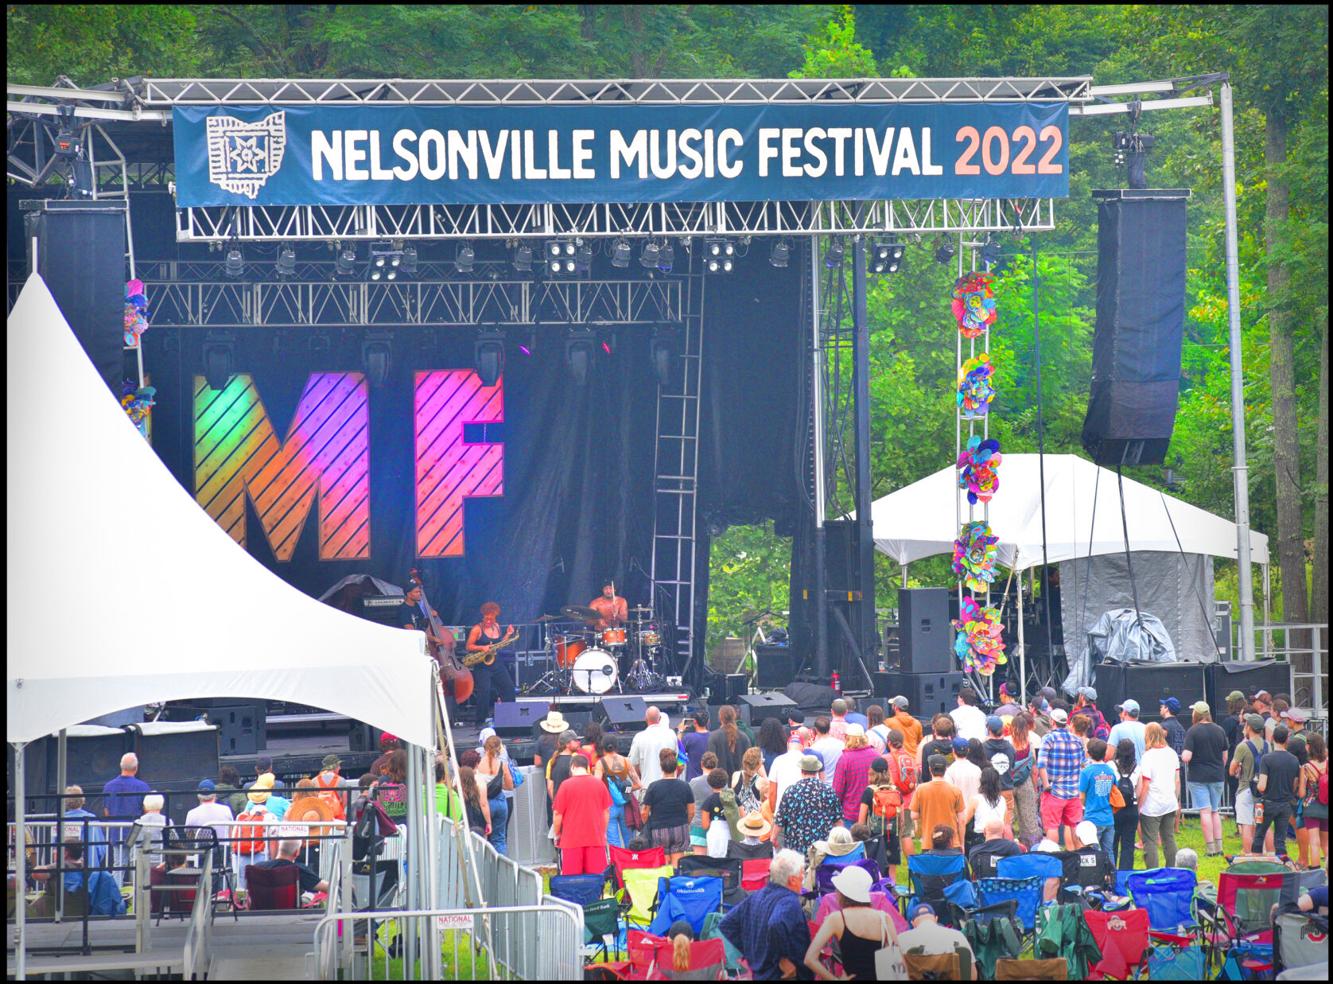 Nelsonville Music Festival 2022 News